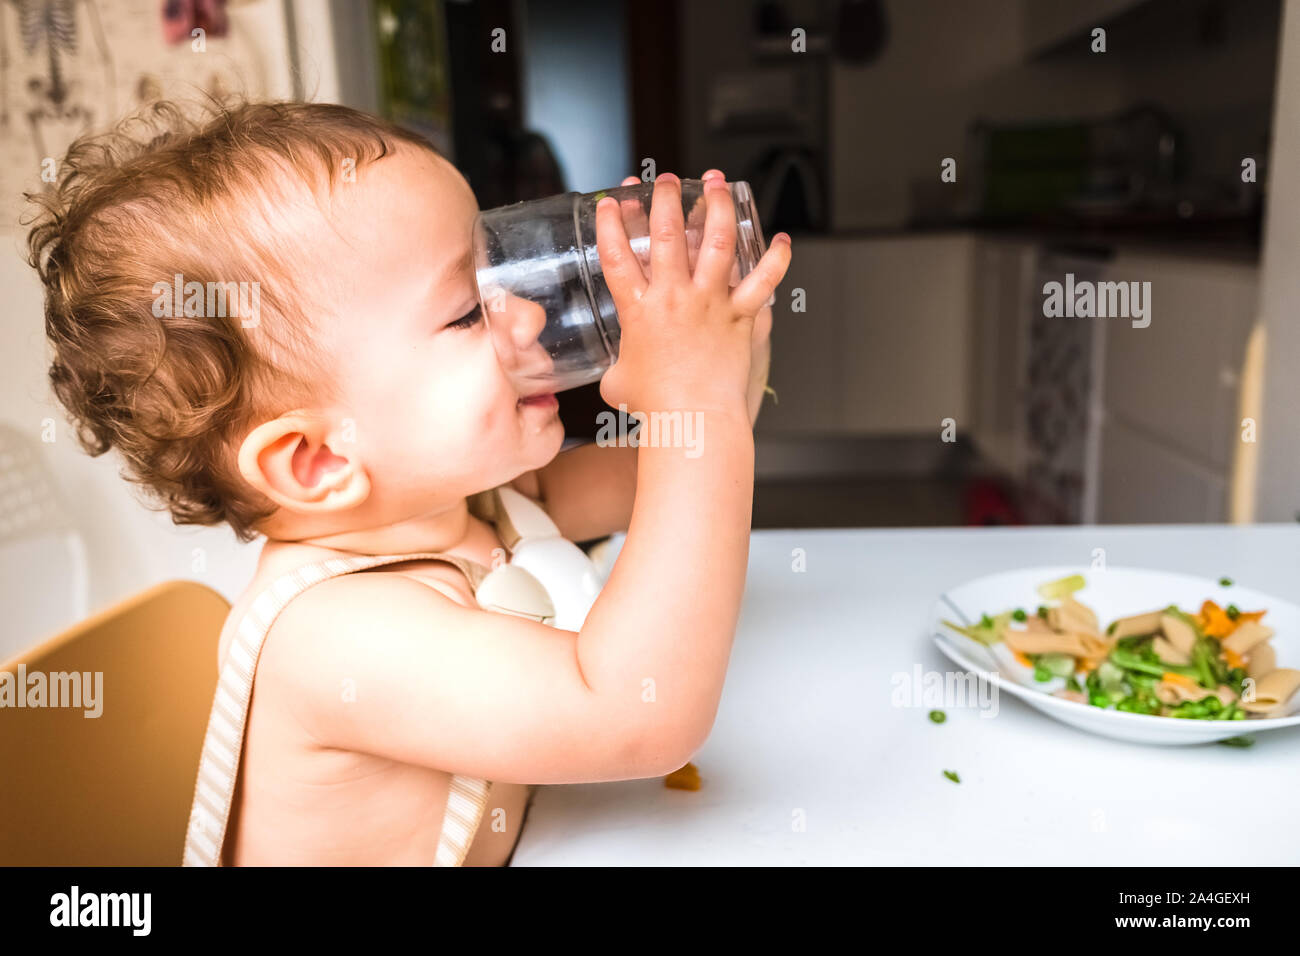 Vaso De Agua Para Beberse Un Bebé. Nutrición Saludable Para Los Niños.  Retrato De Un Bebé Que Bebe En El Ambiente Doméstico. Imagen de archivo -  Imagen de desayuno, cabritos: 277272161